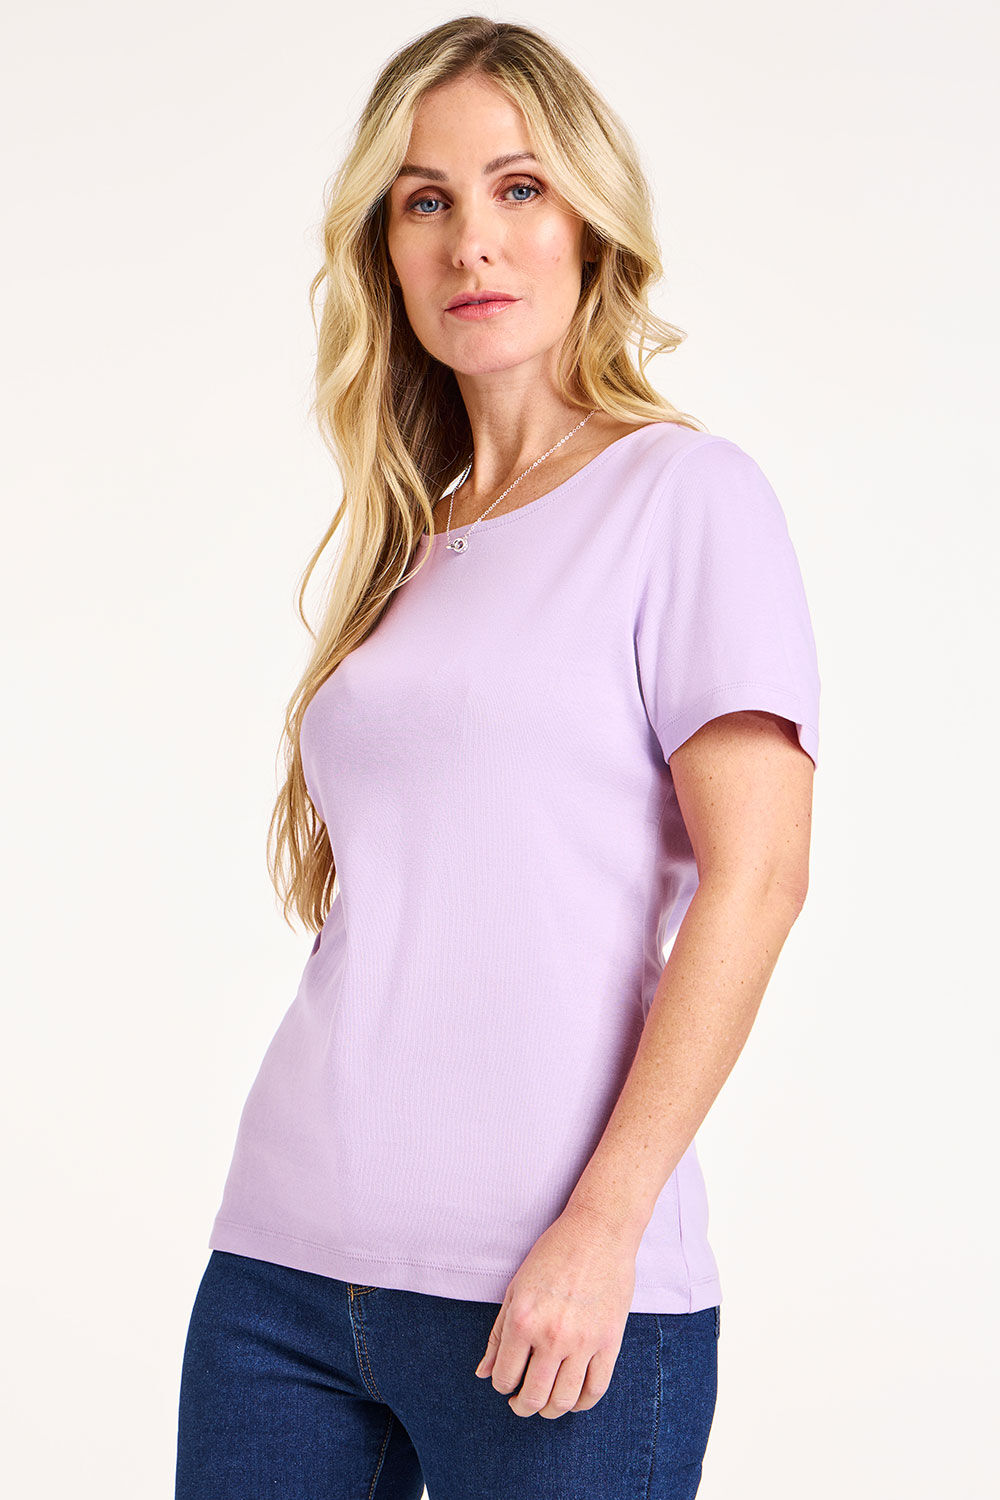 Bonmarche Women’s Light Purple Cotton Classic Short Sleeve Plain Scoop Neck T-Shirt, Size: 20